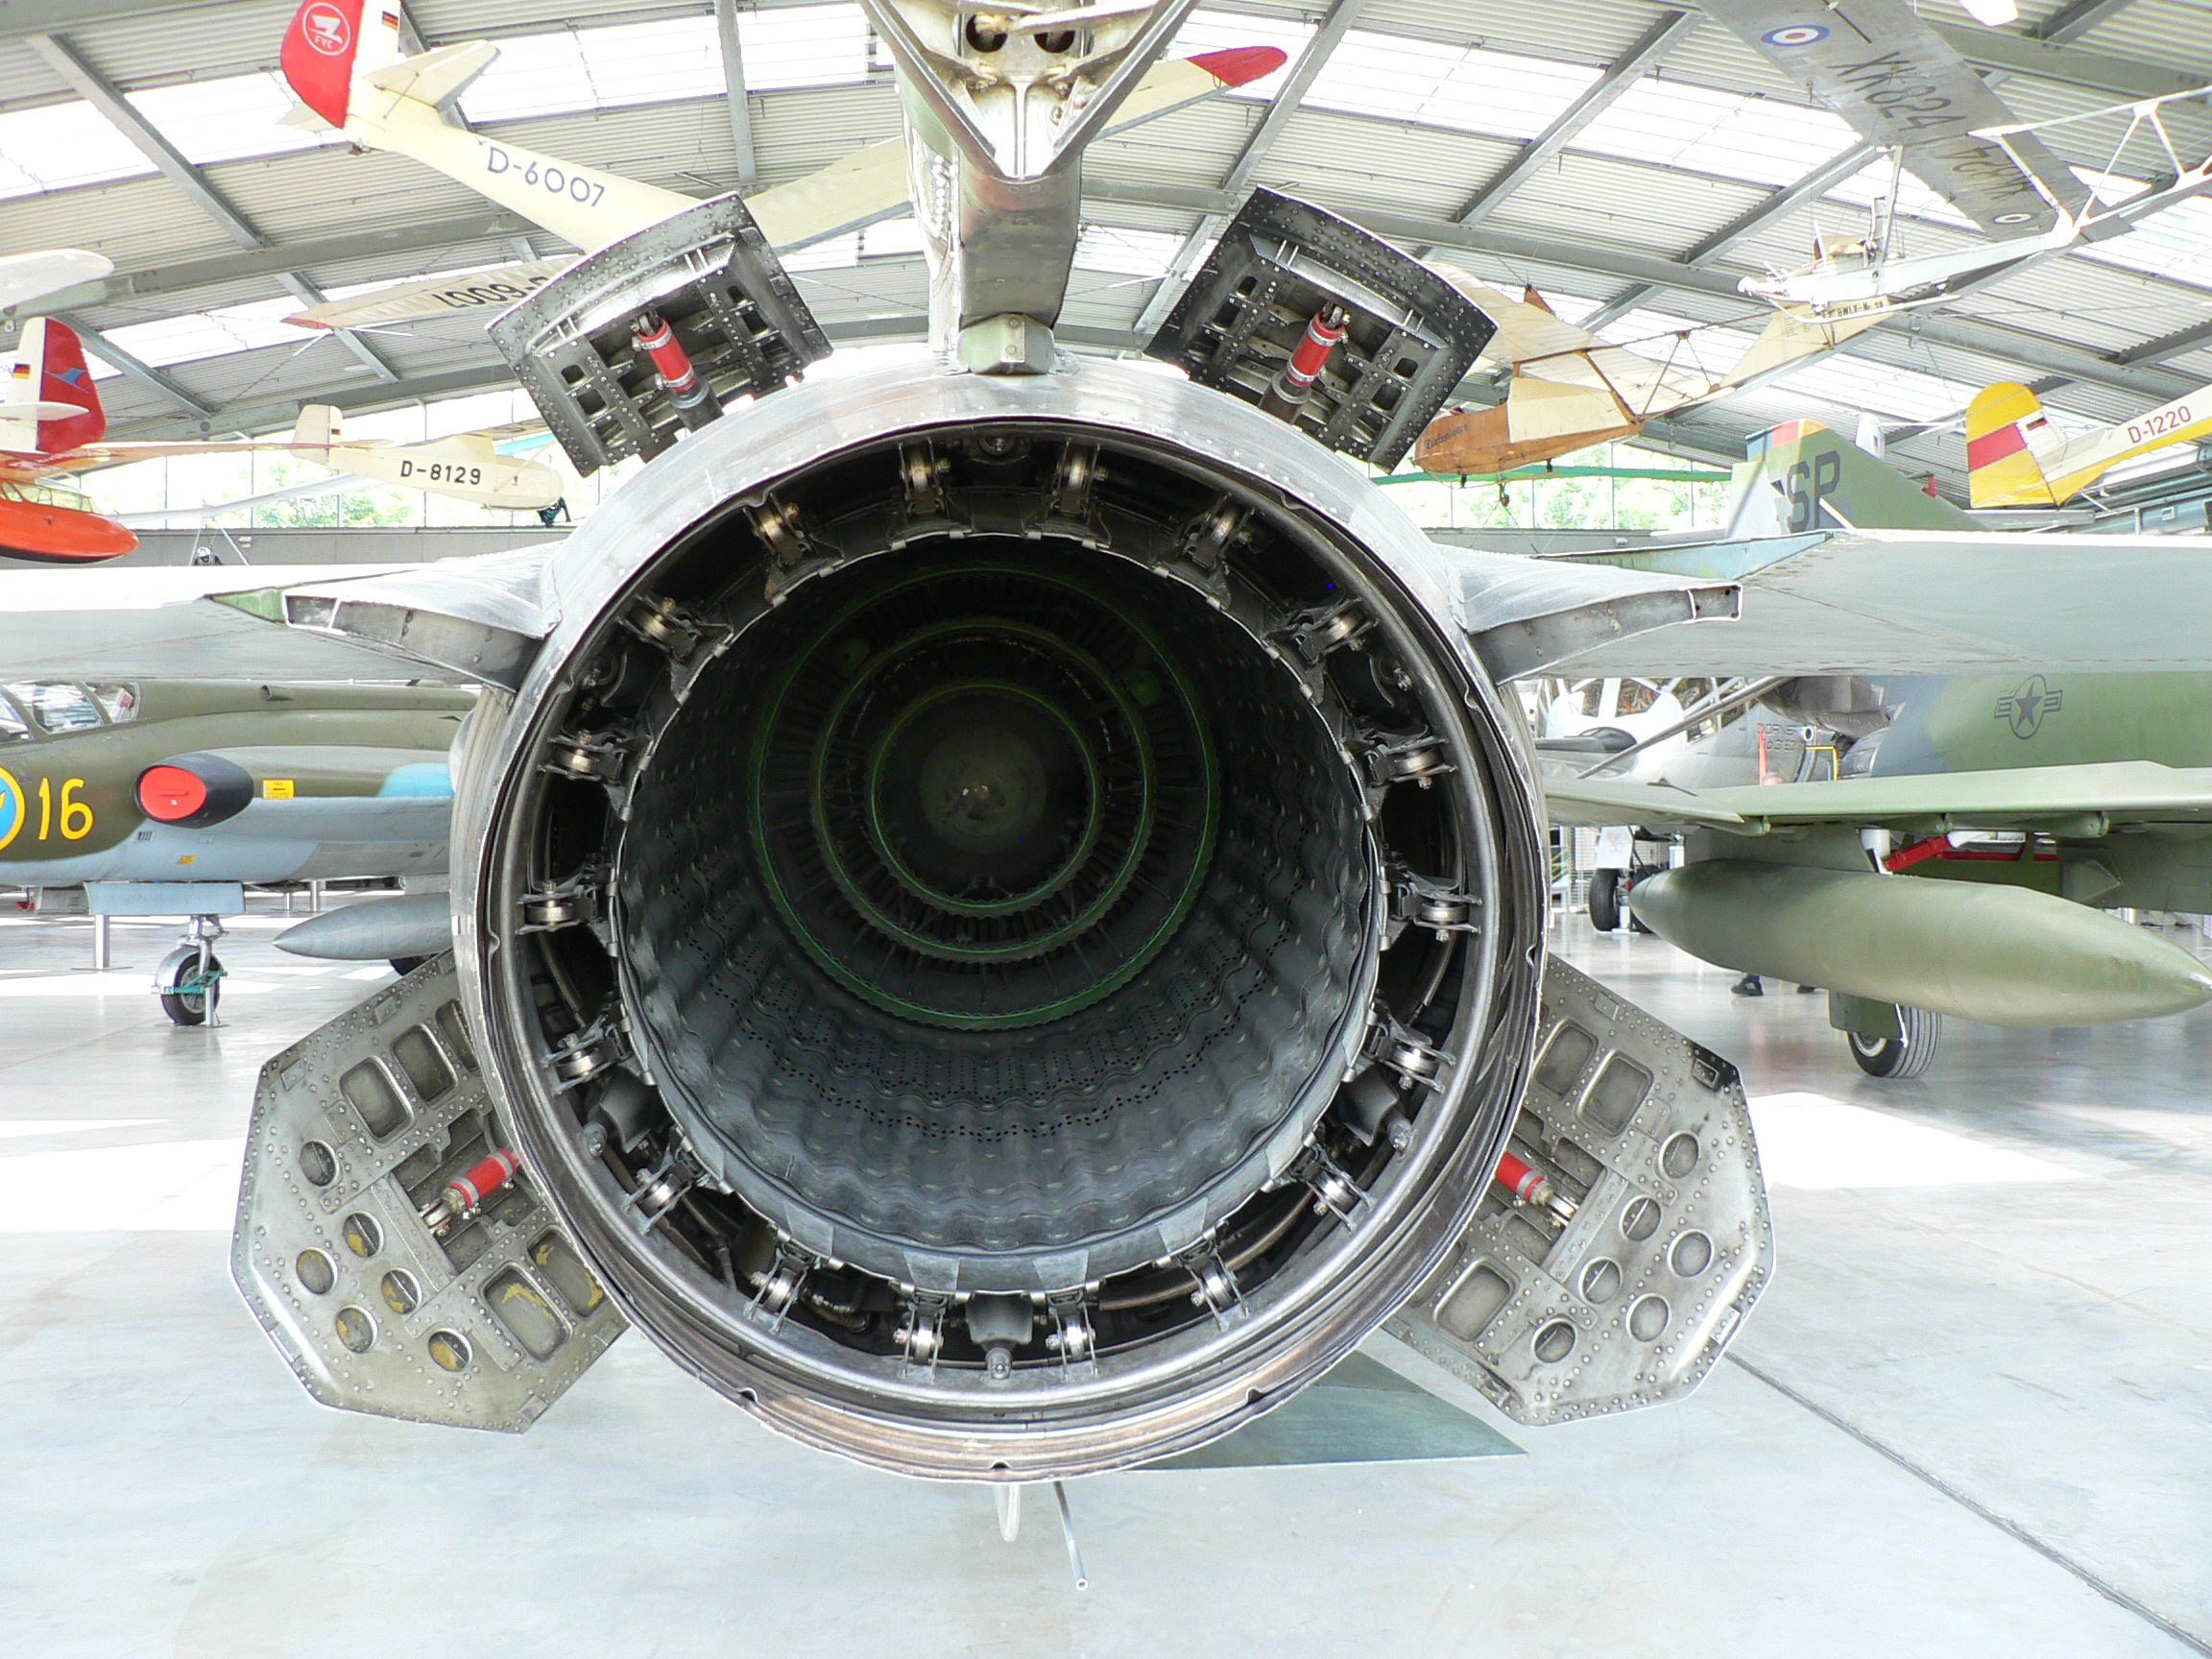 MiG-23_afterburner_exhaust_airbrakes.jpg